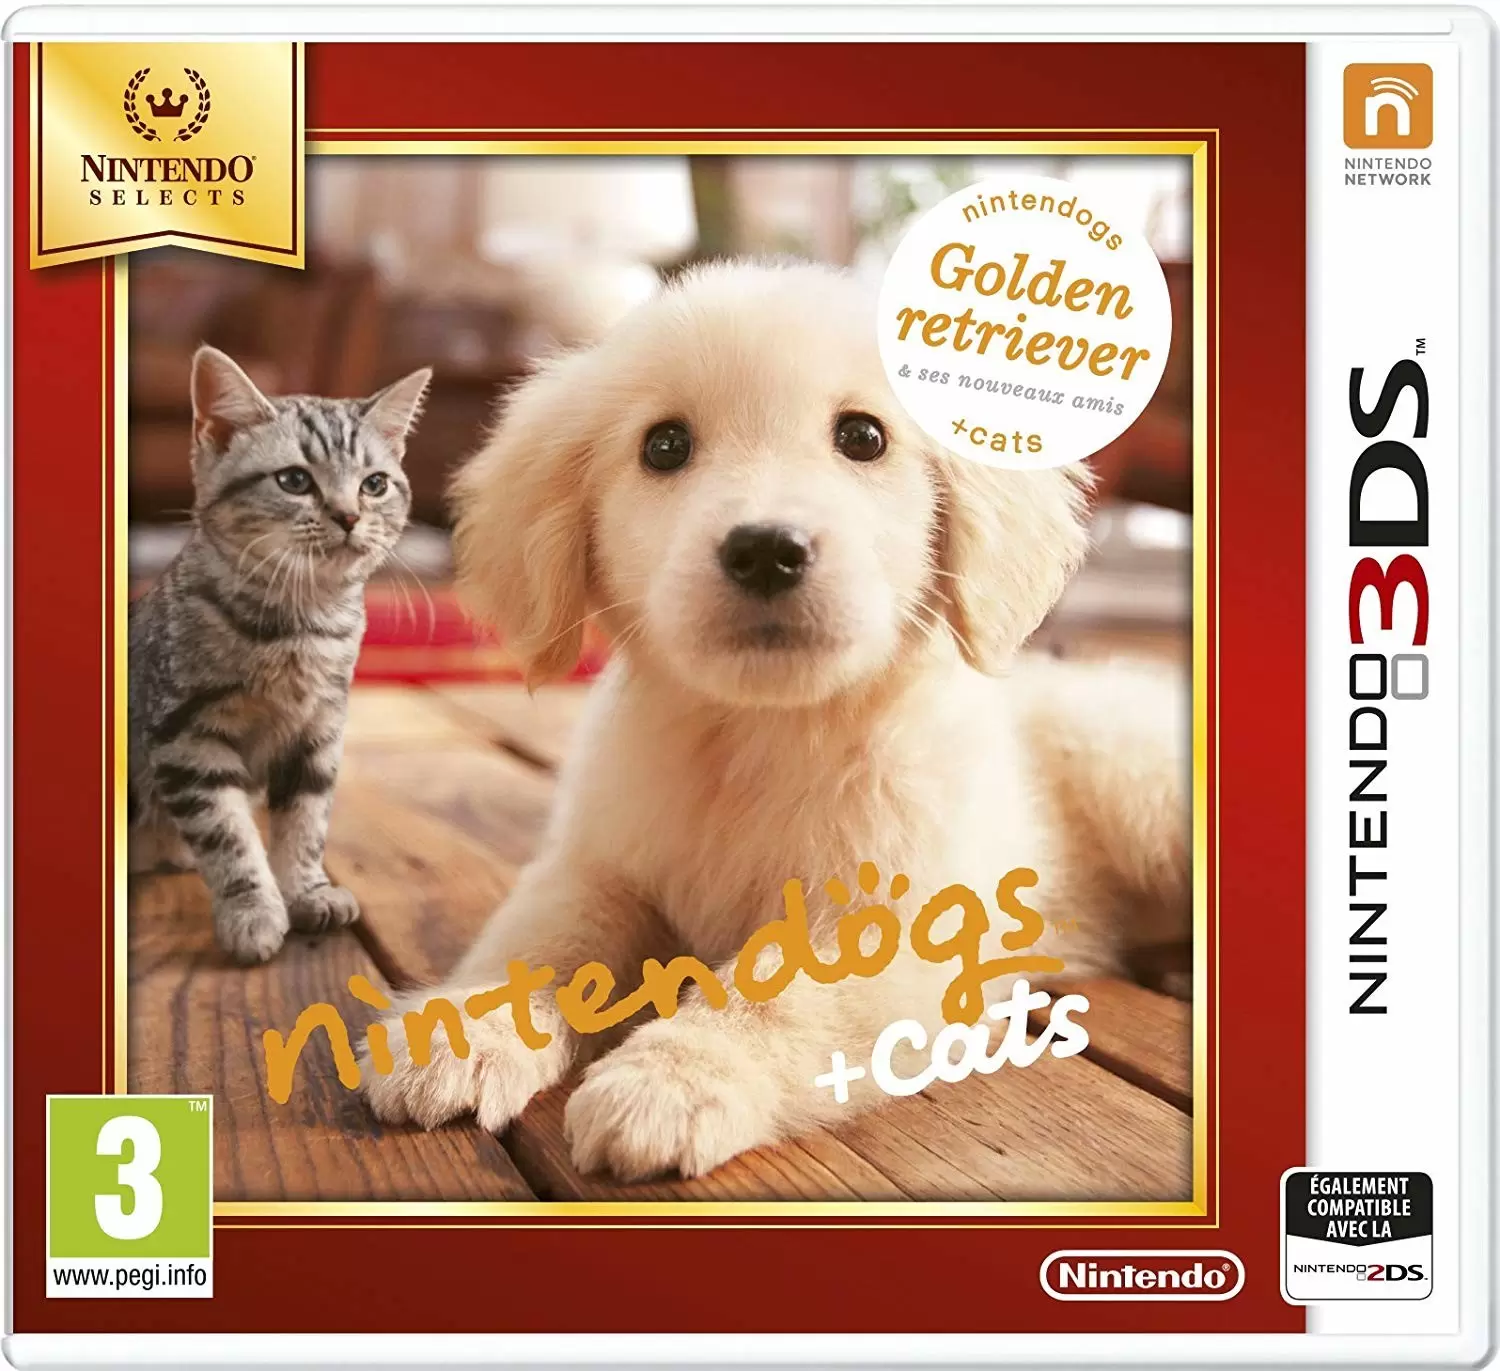 Jeux Nintendo 2DS / 3DS - Nintendogs Retriever + Cats (Nintendo Selects)